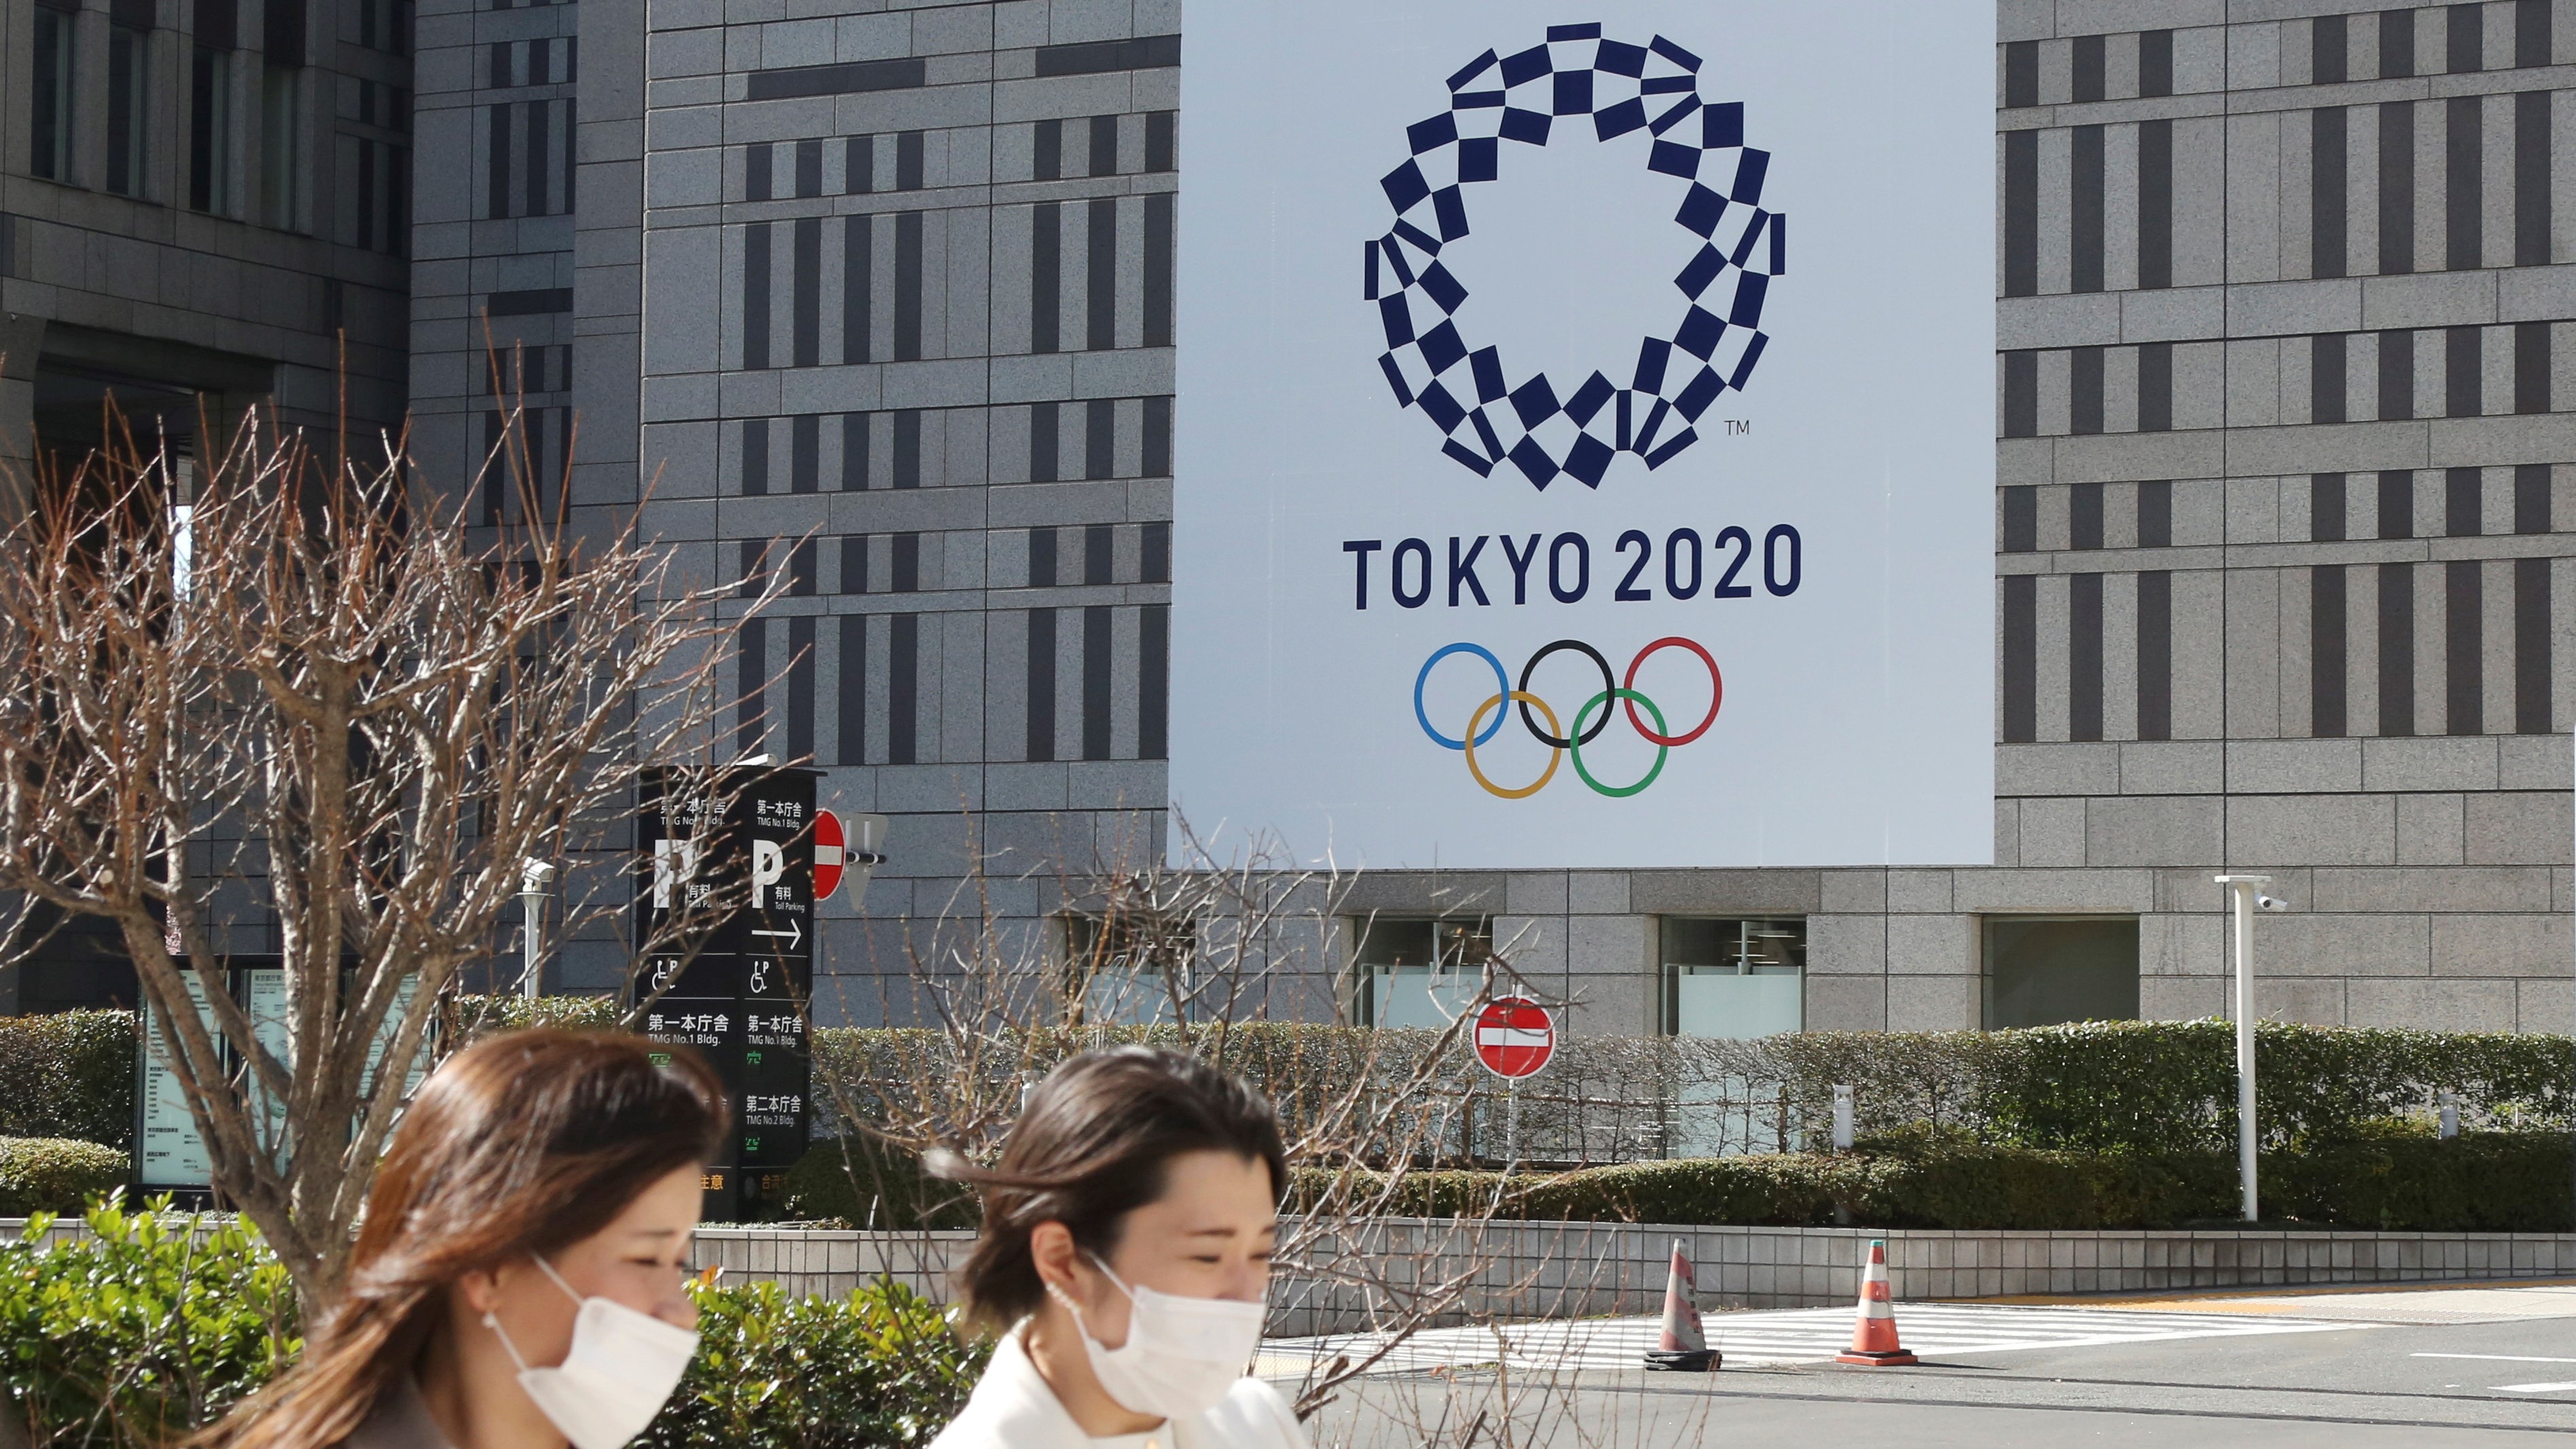 Két védőmaszkos nő megy a tokiói nyári olimpiát hirdető plakát előtt a japán fővárosban 2021. február 17-én. A koronavírus-járvány miatt 2020-ról 2021-re halasztott ötkarikás játékokat a tervek szerint 2021. július 23. és augusztus 8. között rendezik meg, de a legfrissebb közvéleménykutatások szerint a lakosság 80 százaléka vagy tovább halasztaná vagy meg sem rendezné az olimpiát.